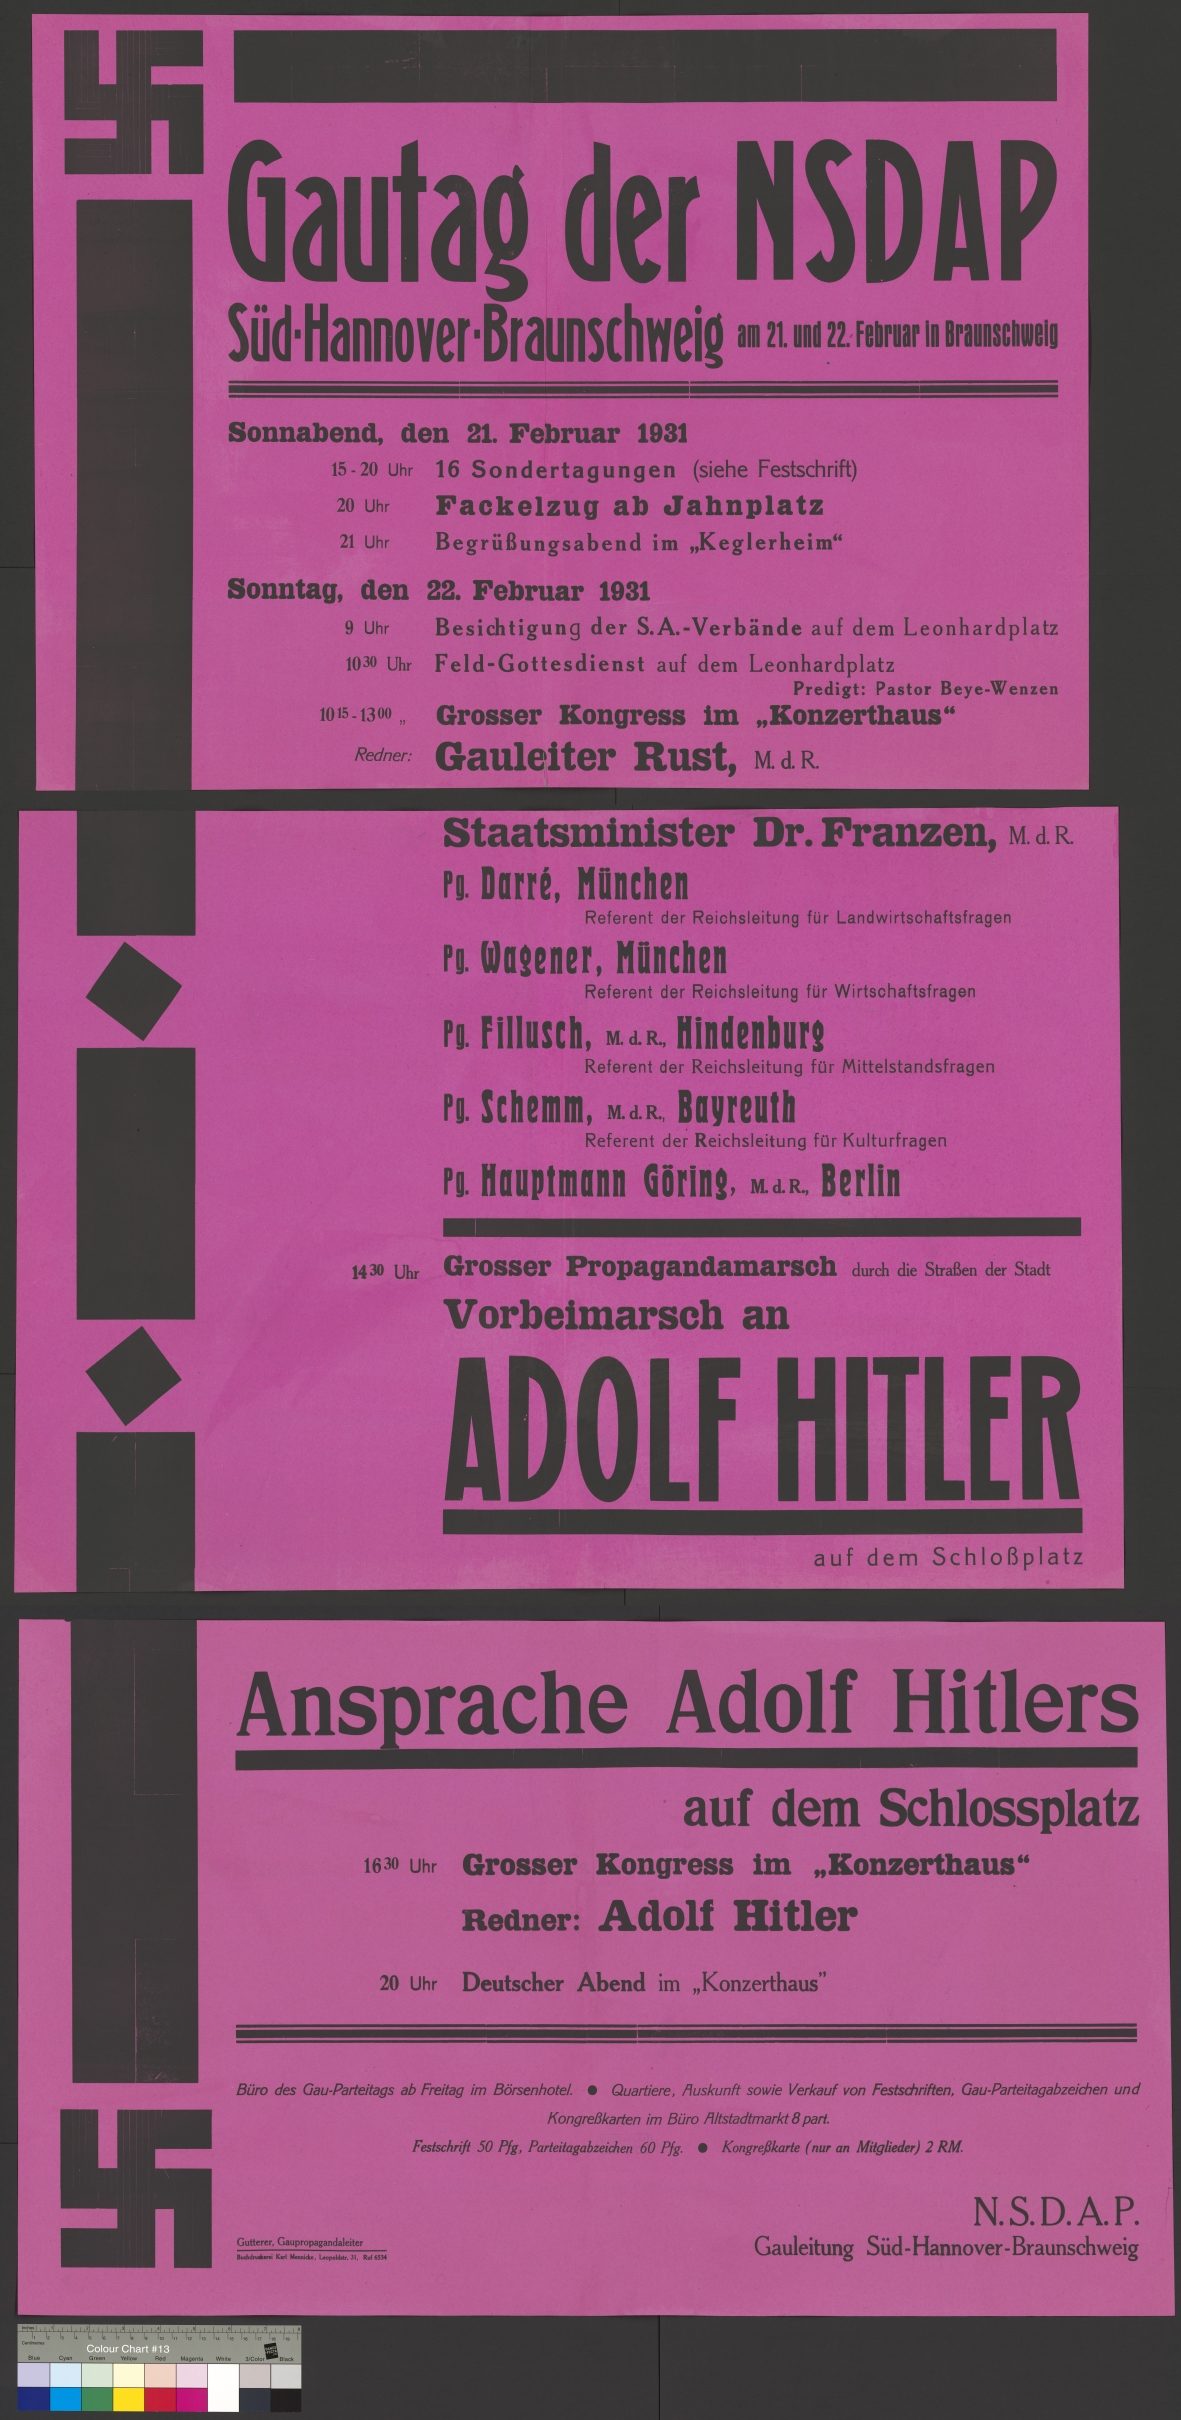 Plakat_Gautag NSDAP (Wird bei Klick vergrößert)